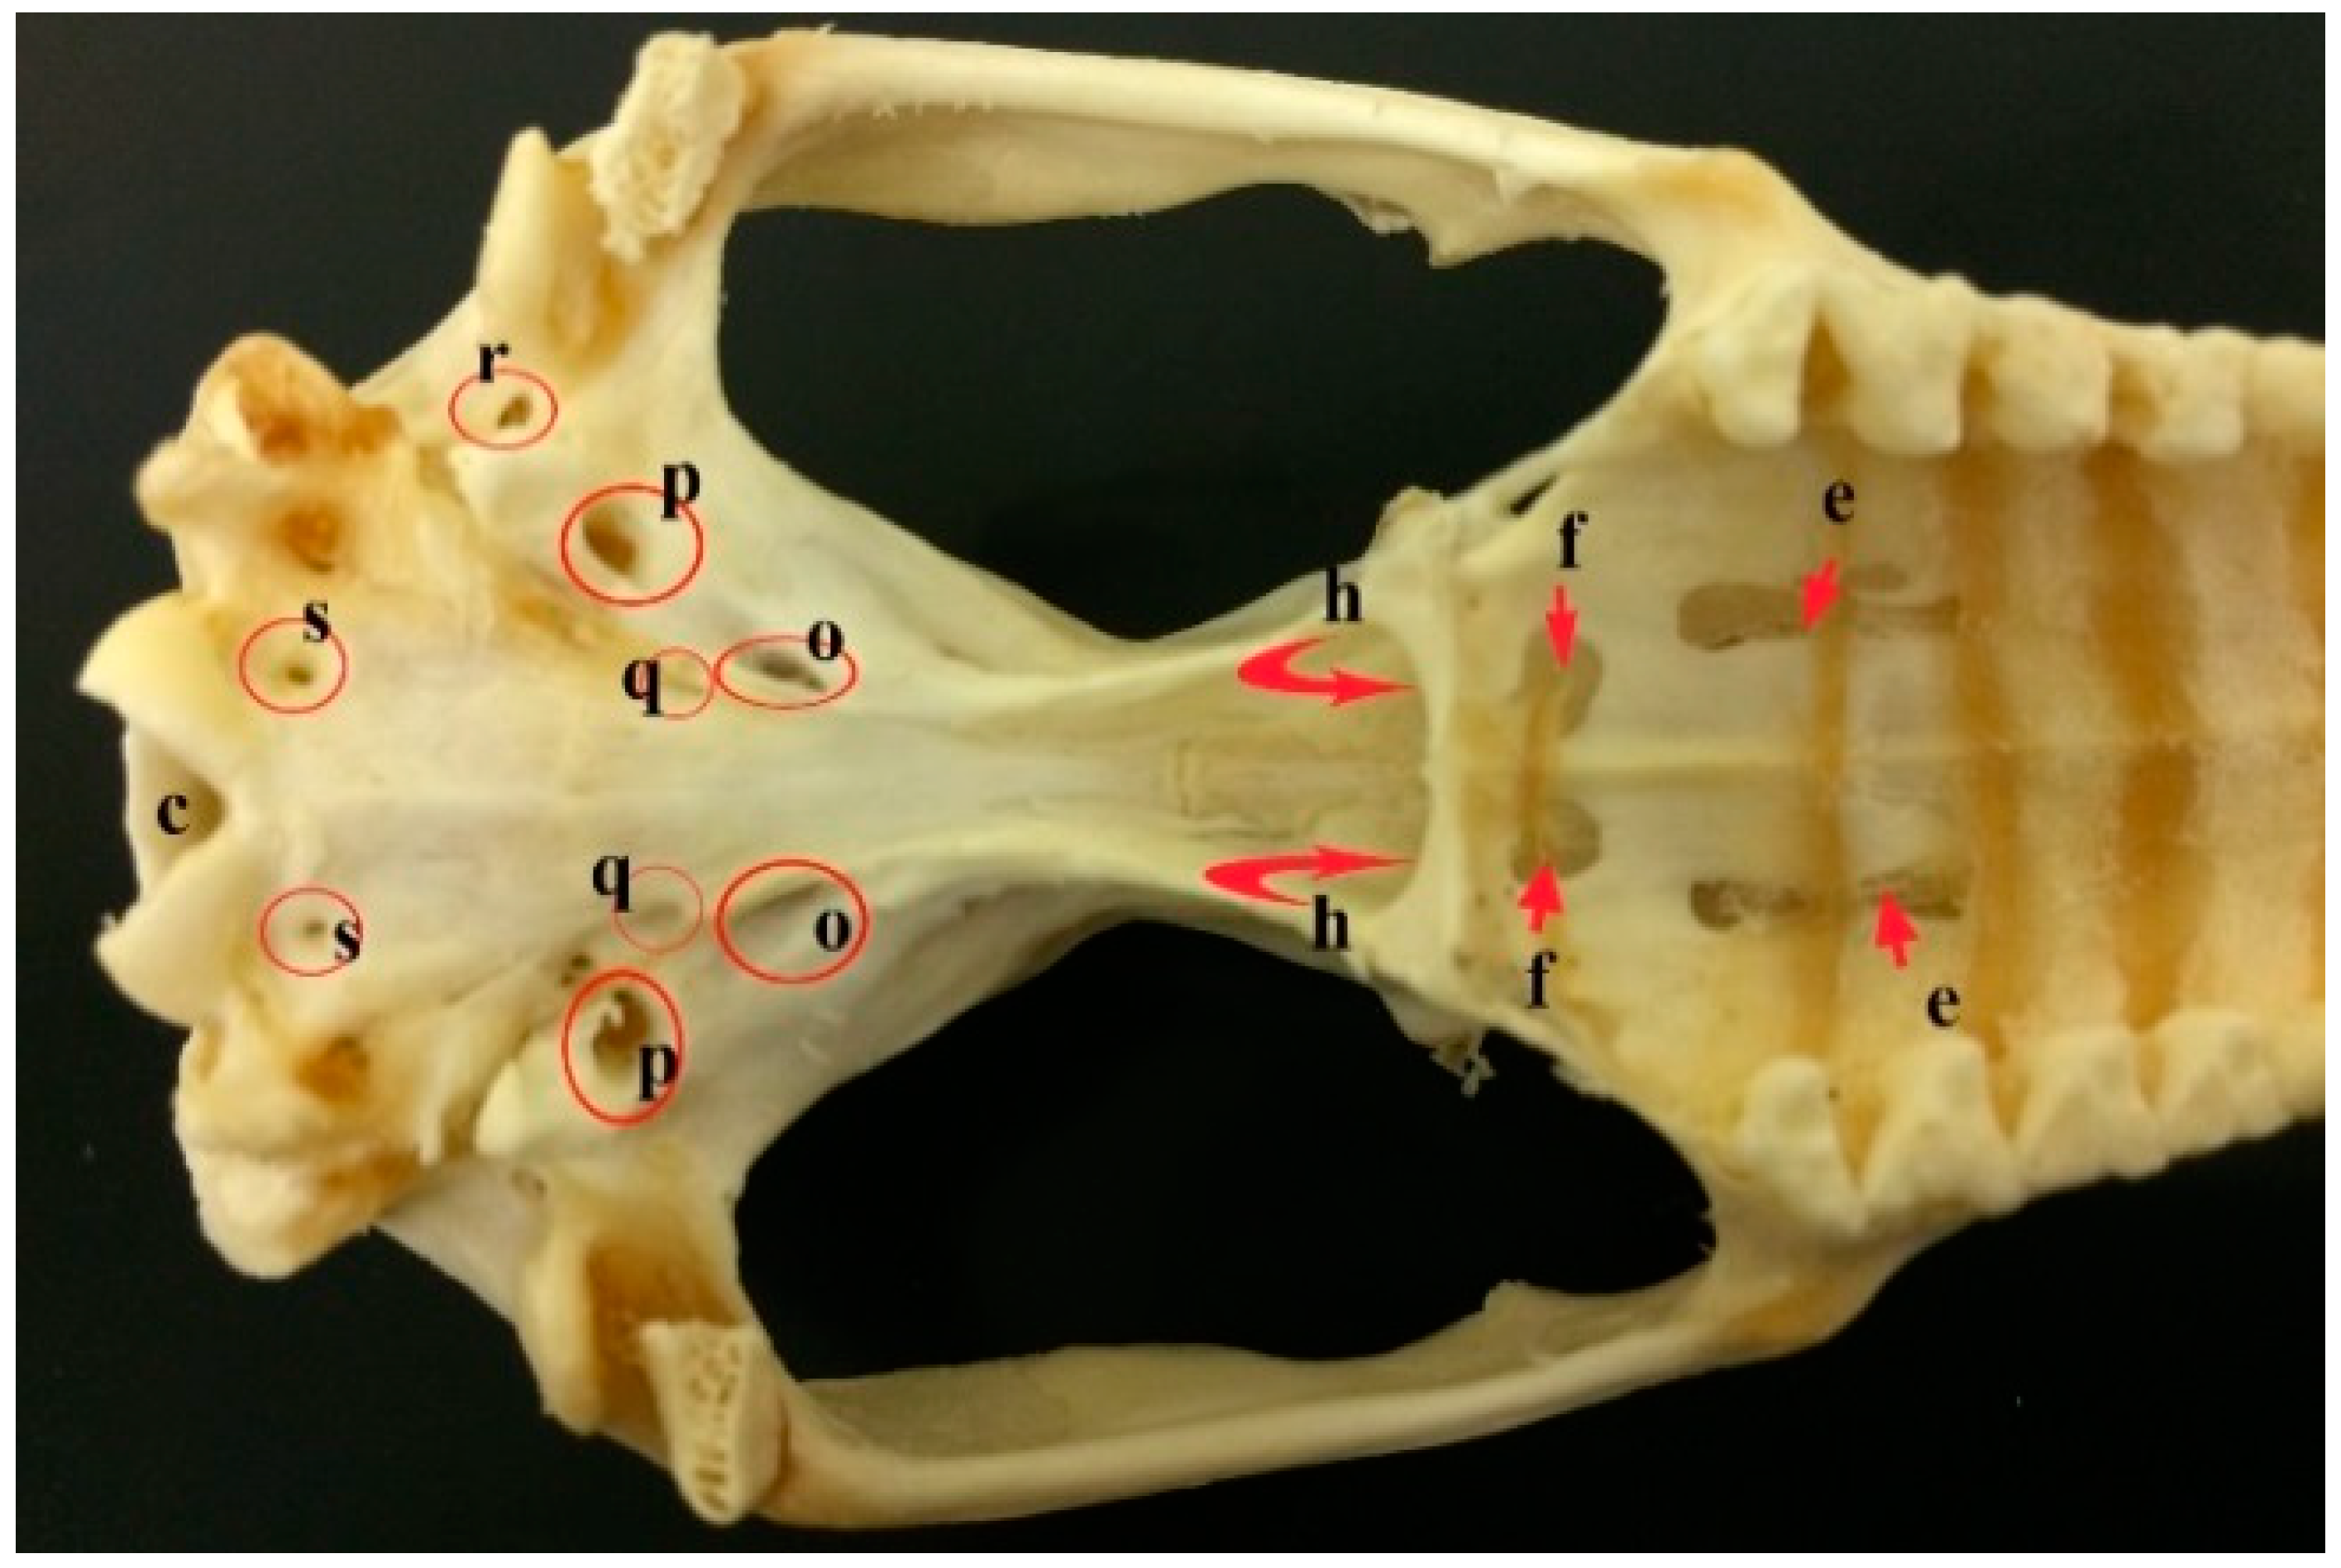 dog mandible anatomy